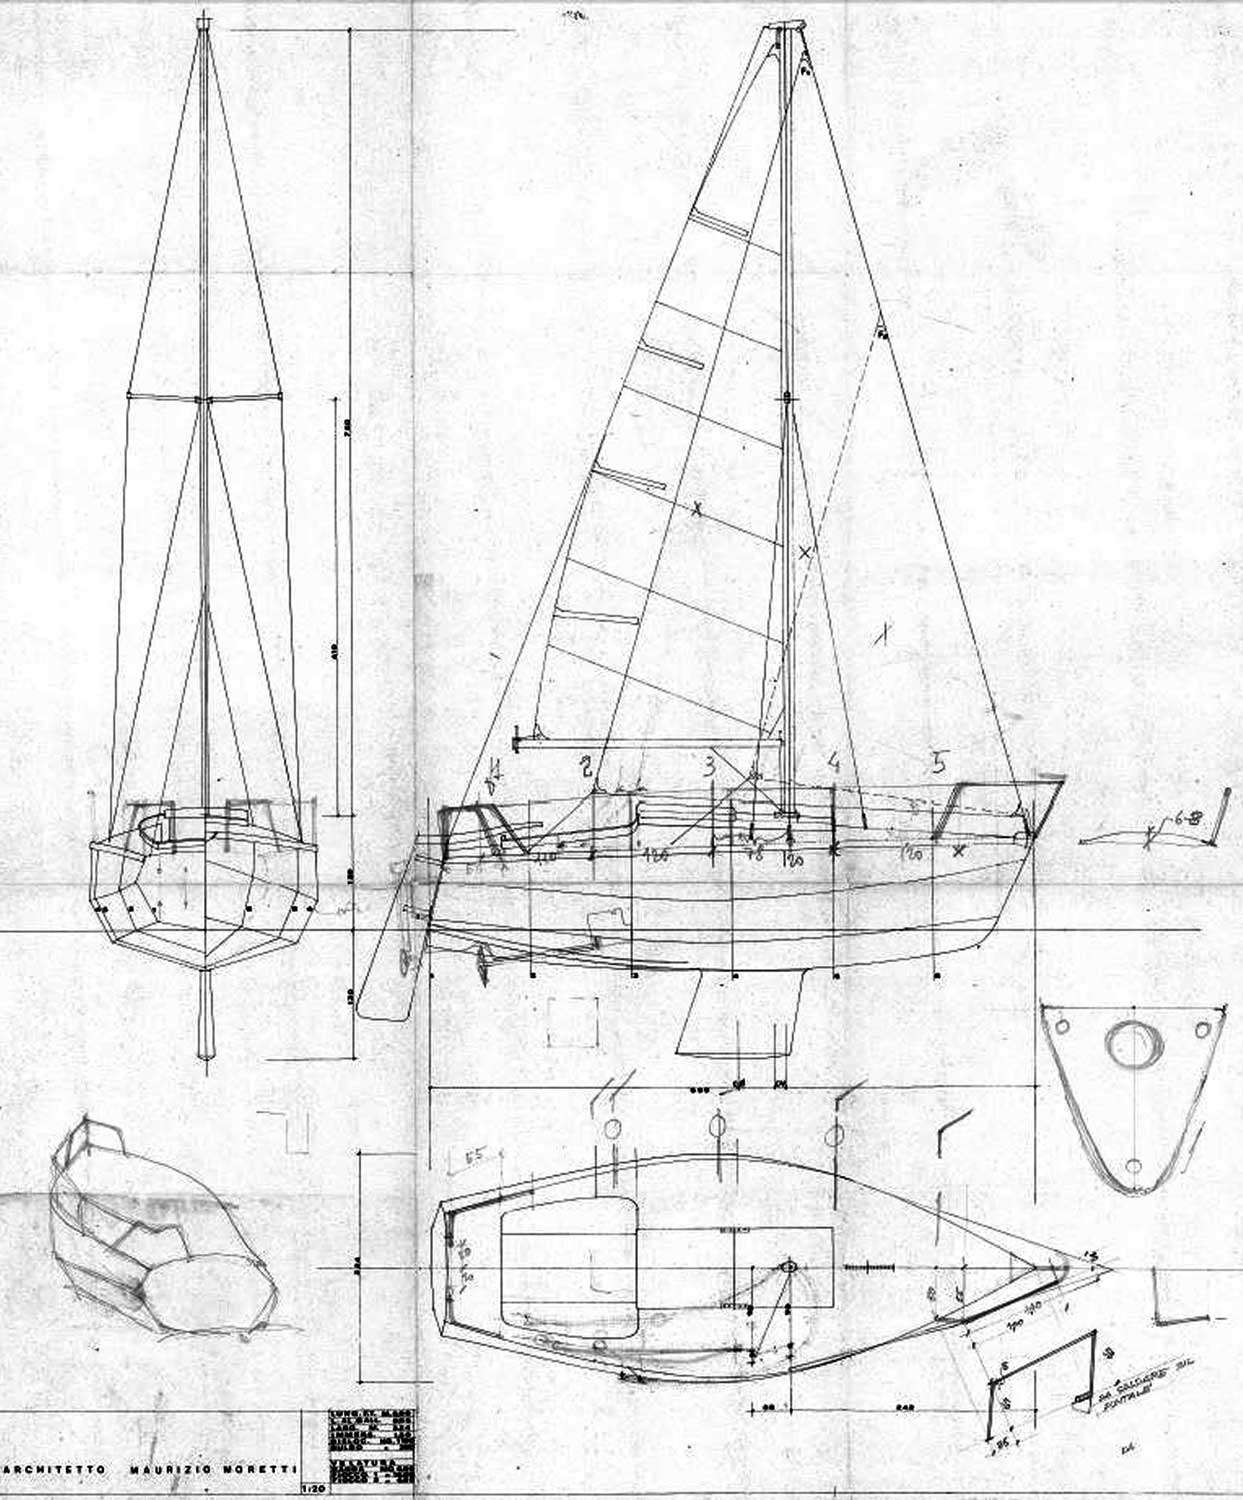 5 - Progetto di barca a vela - Pianta, prospetti, studio assonometrico e dettagli